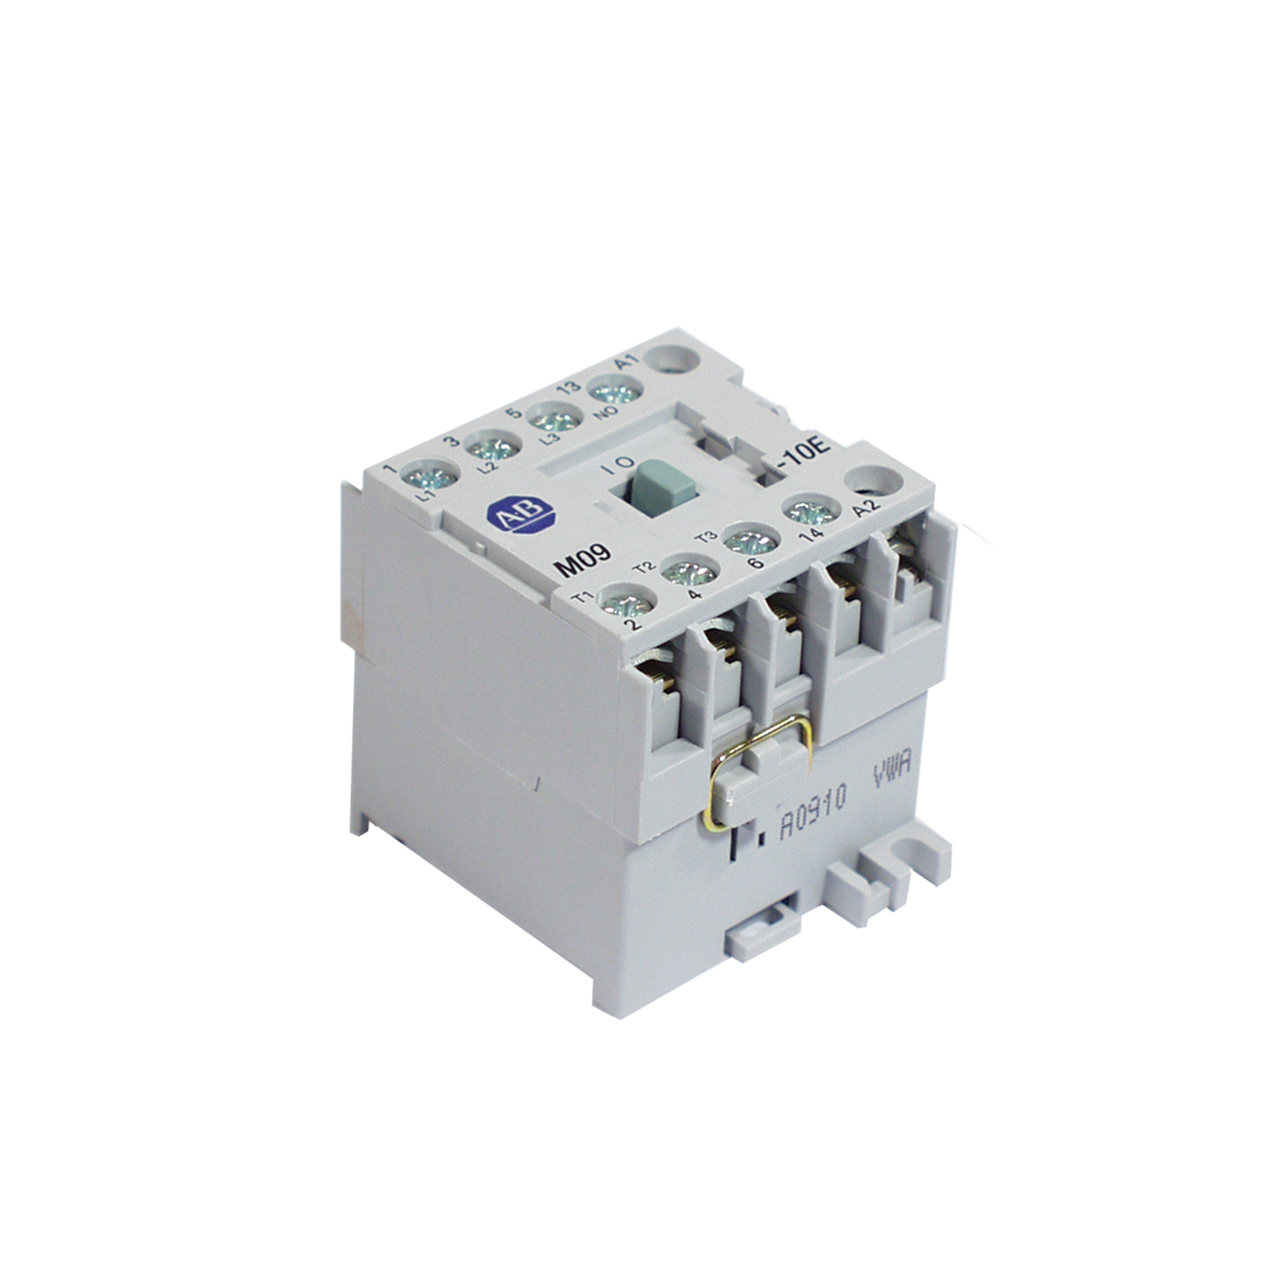 Power relay Evenheat 25 A for Bentrup controller